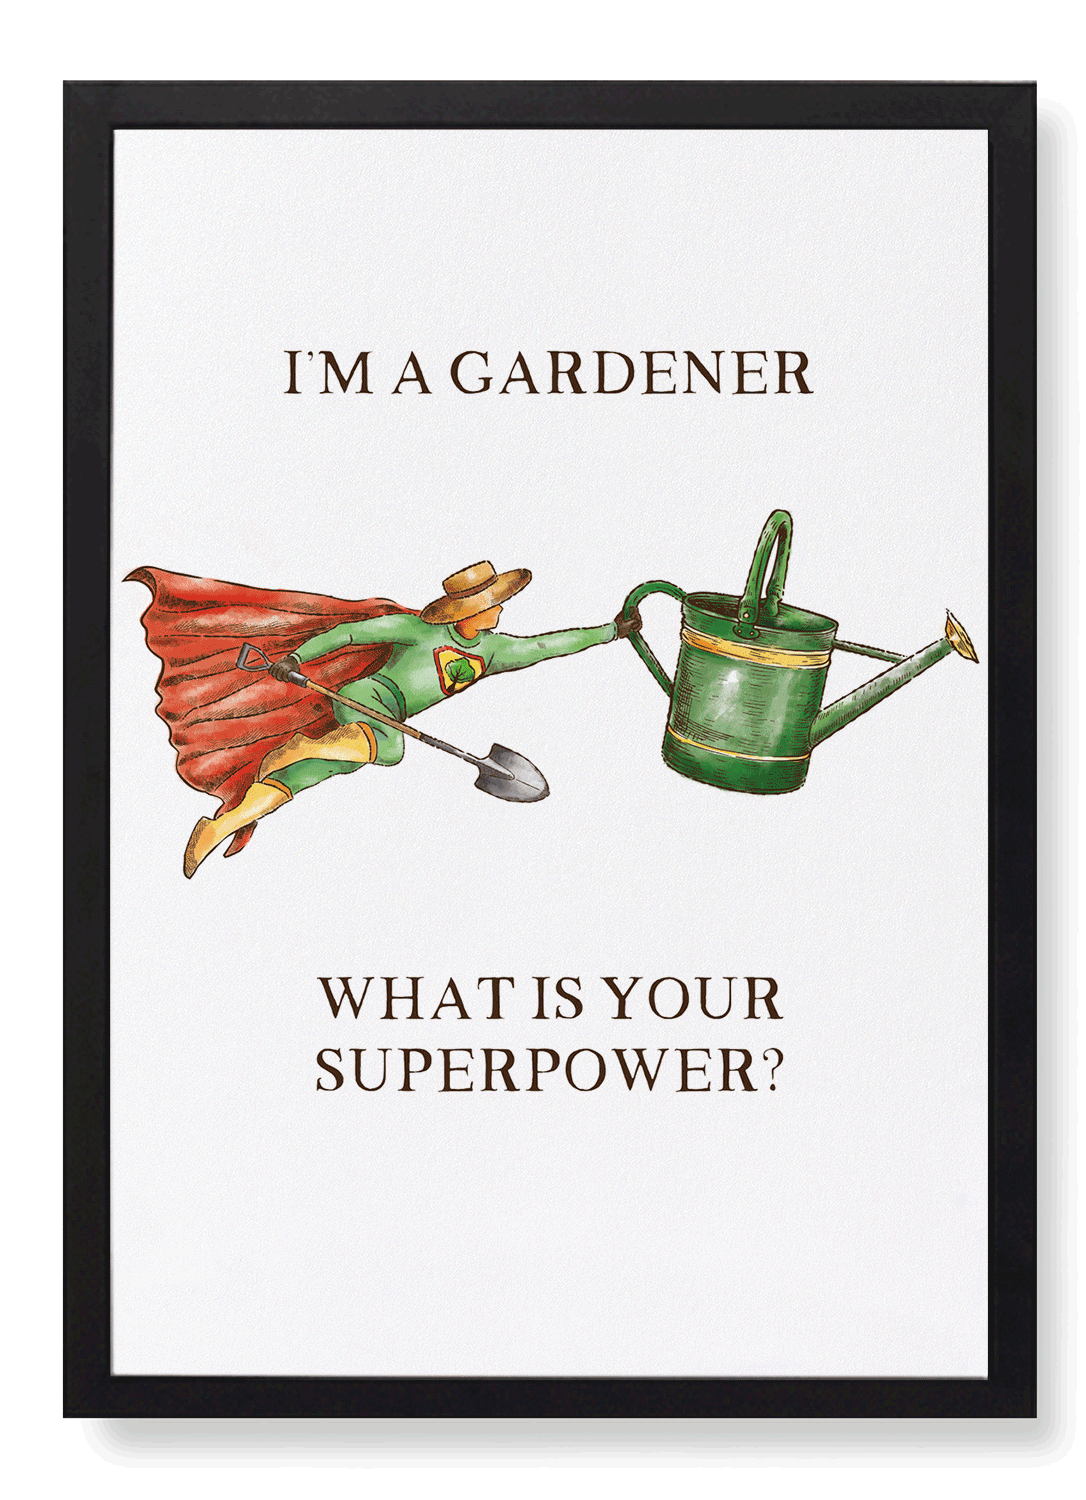 GARDENER SUPERPOWER